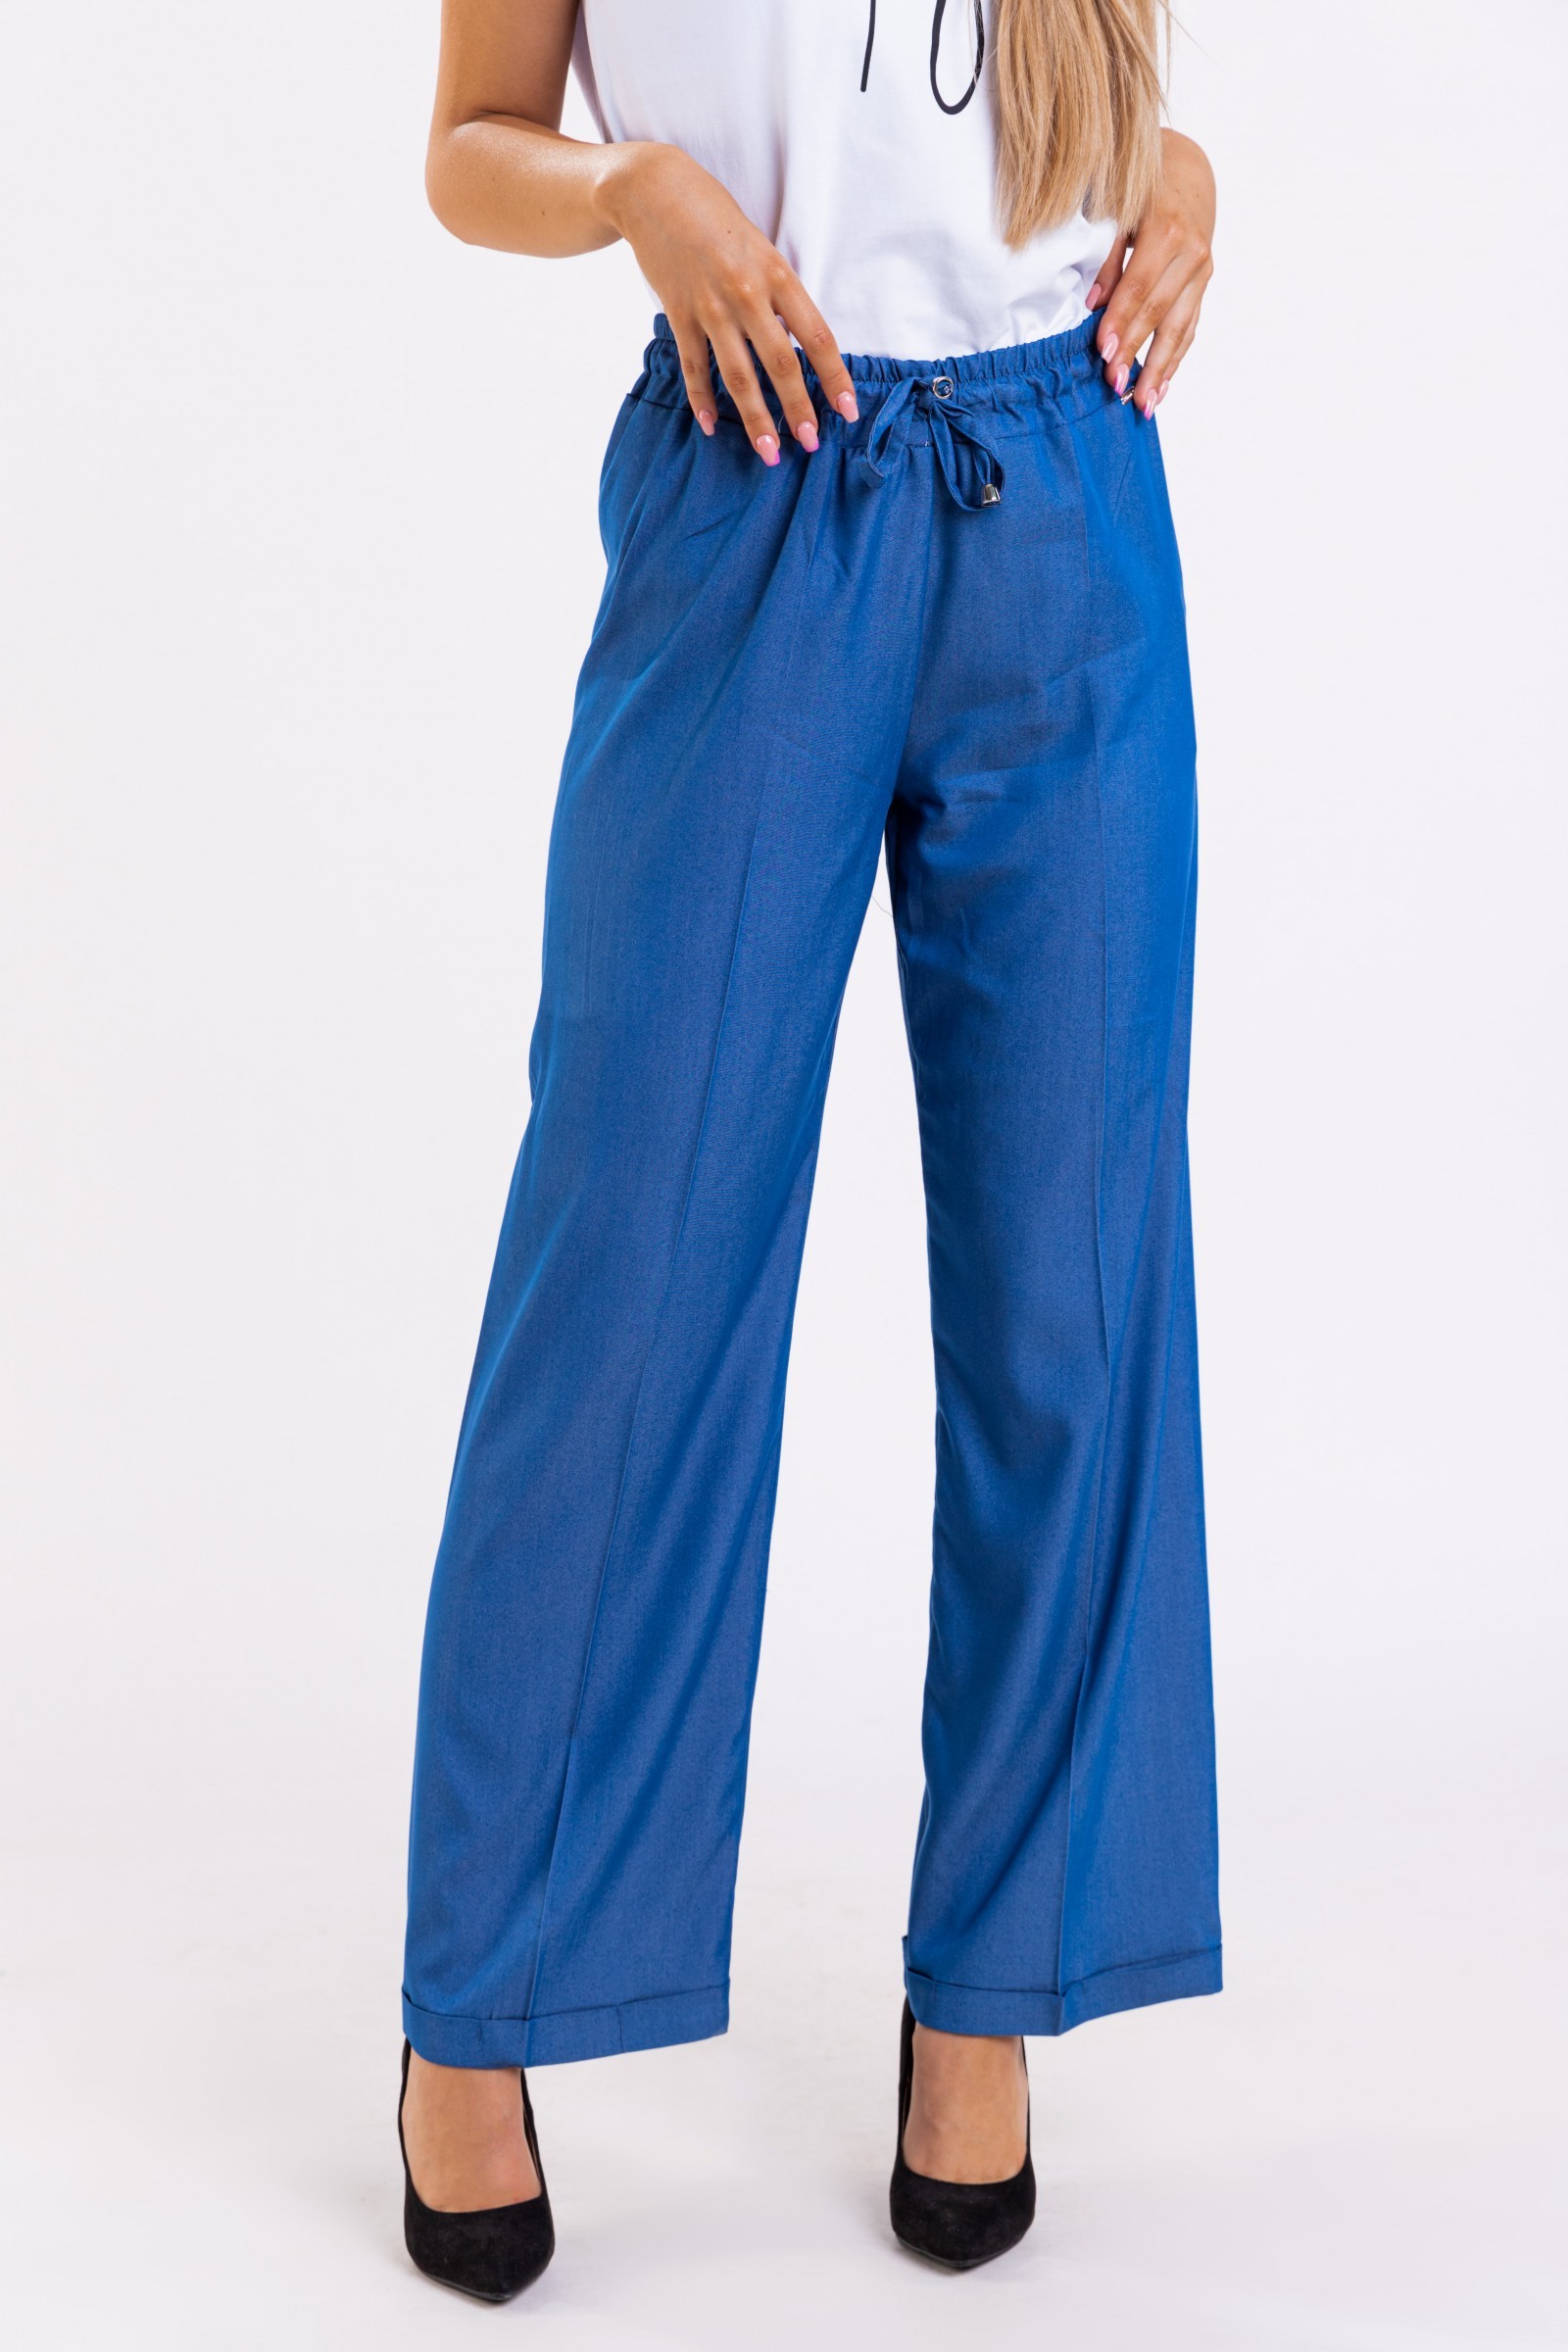 grădină Imprimare Luciu  Pantaloni eleganți cu picioare largi, elastic și șnur in talie Perlita,  albastru, -70%